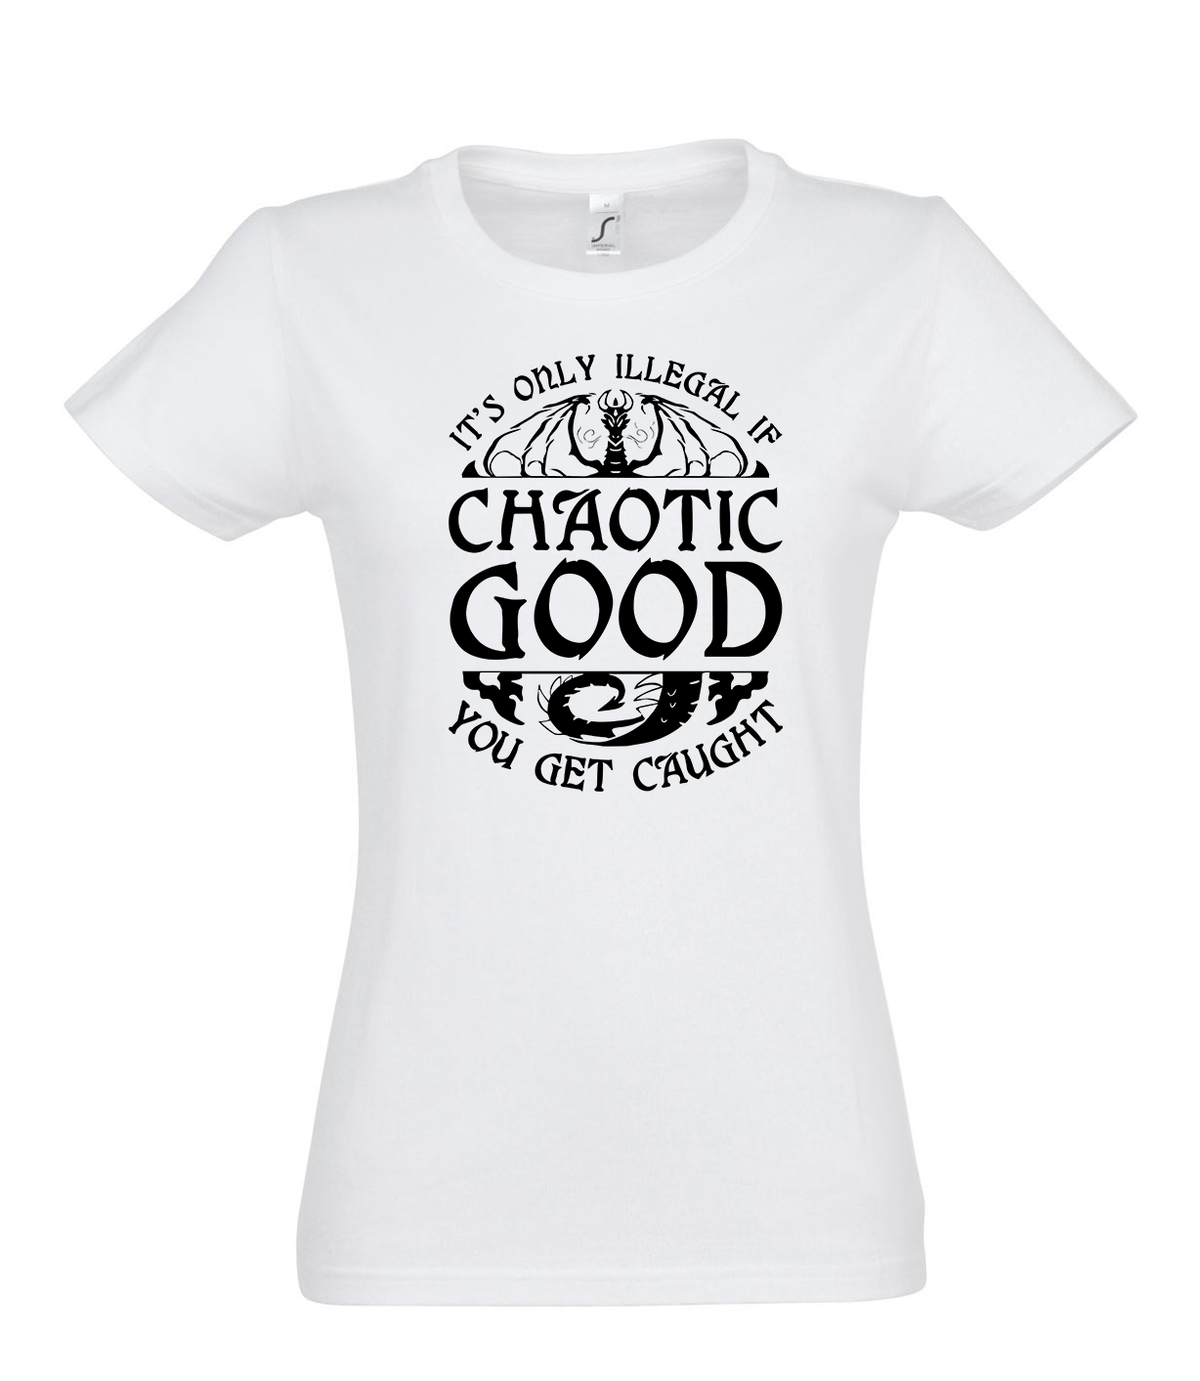 Chatic Good női póló